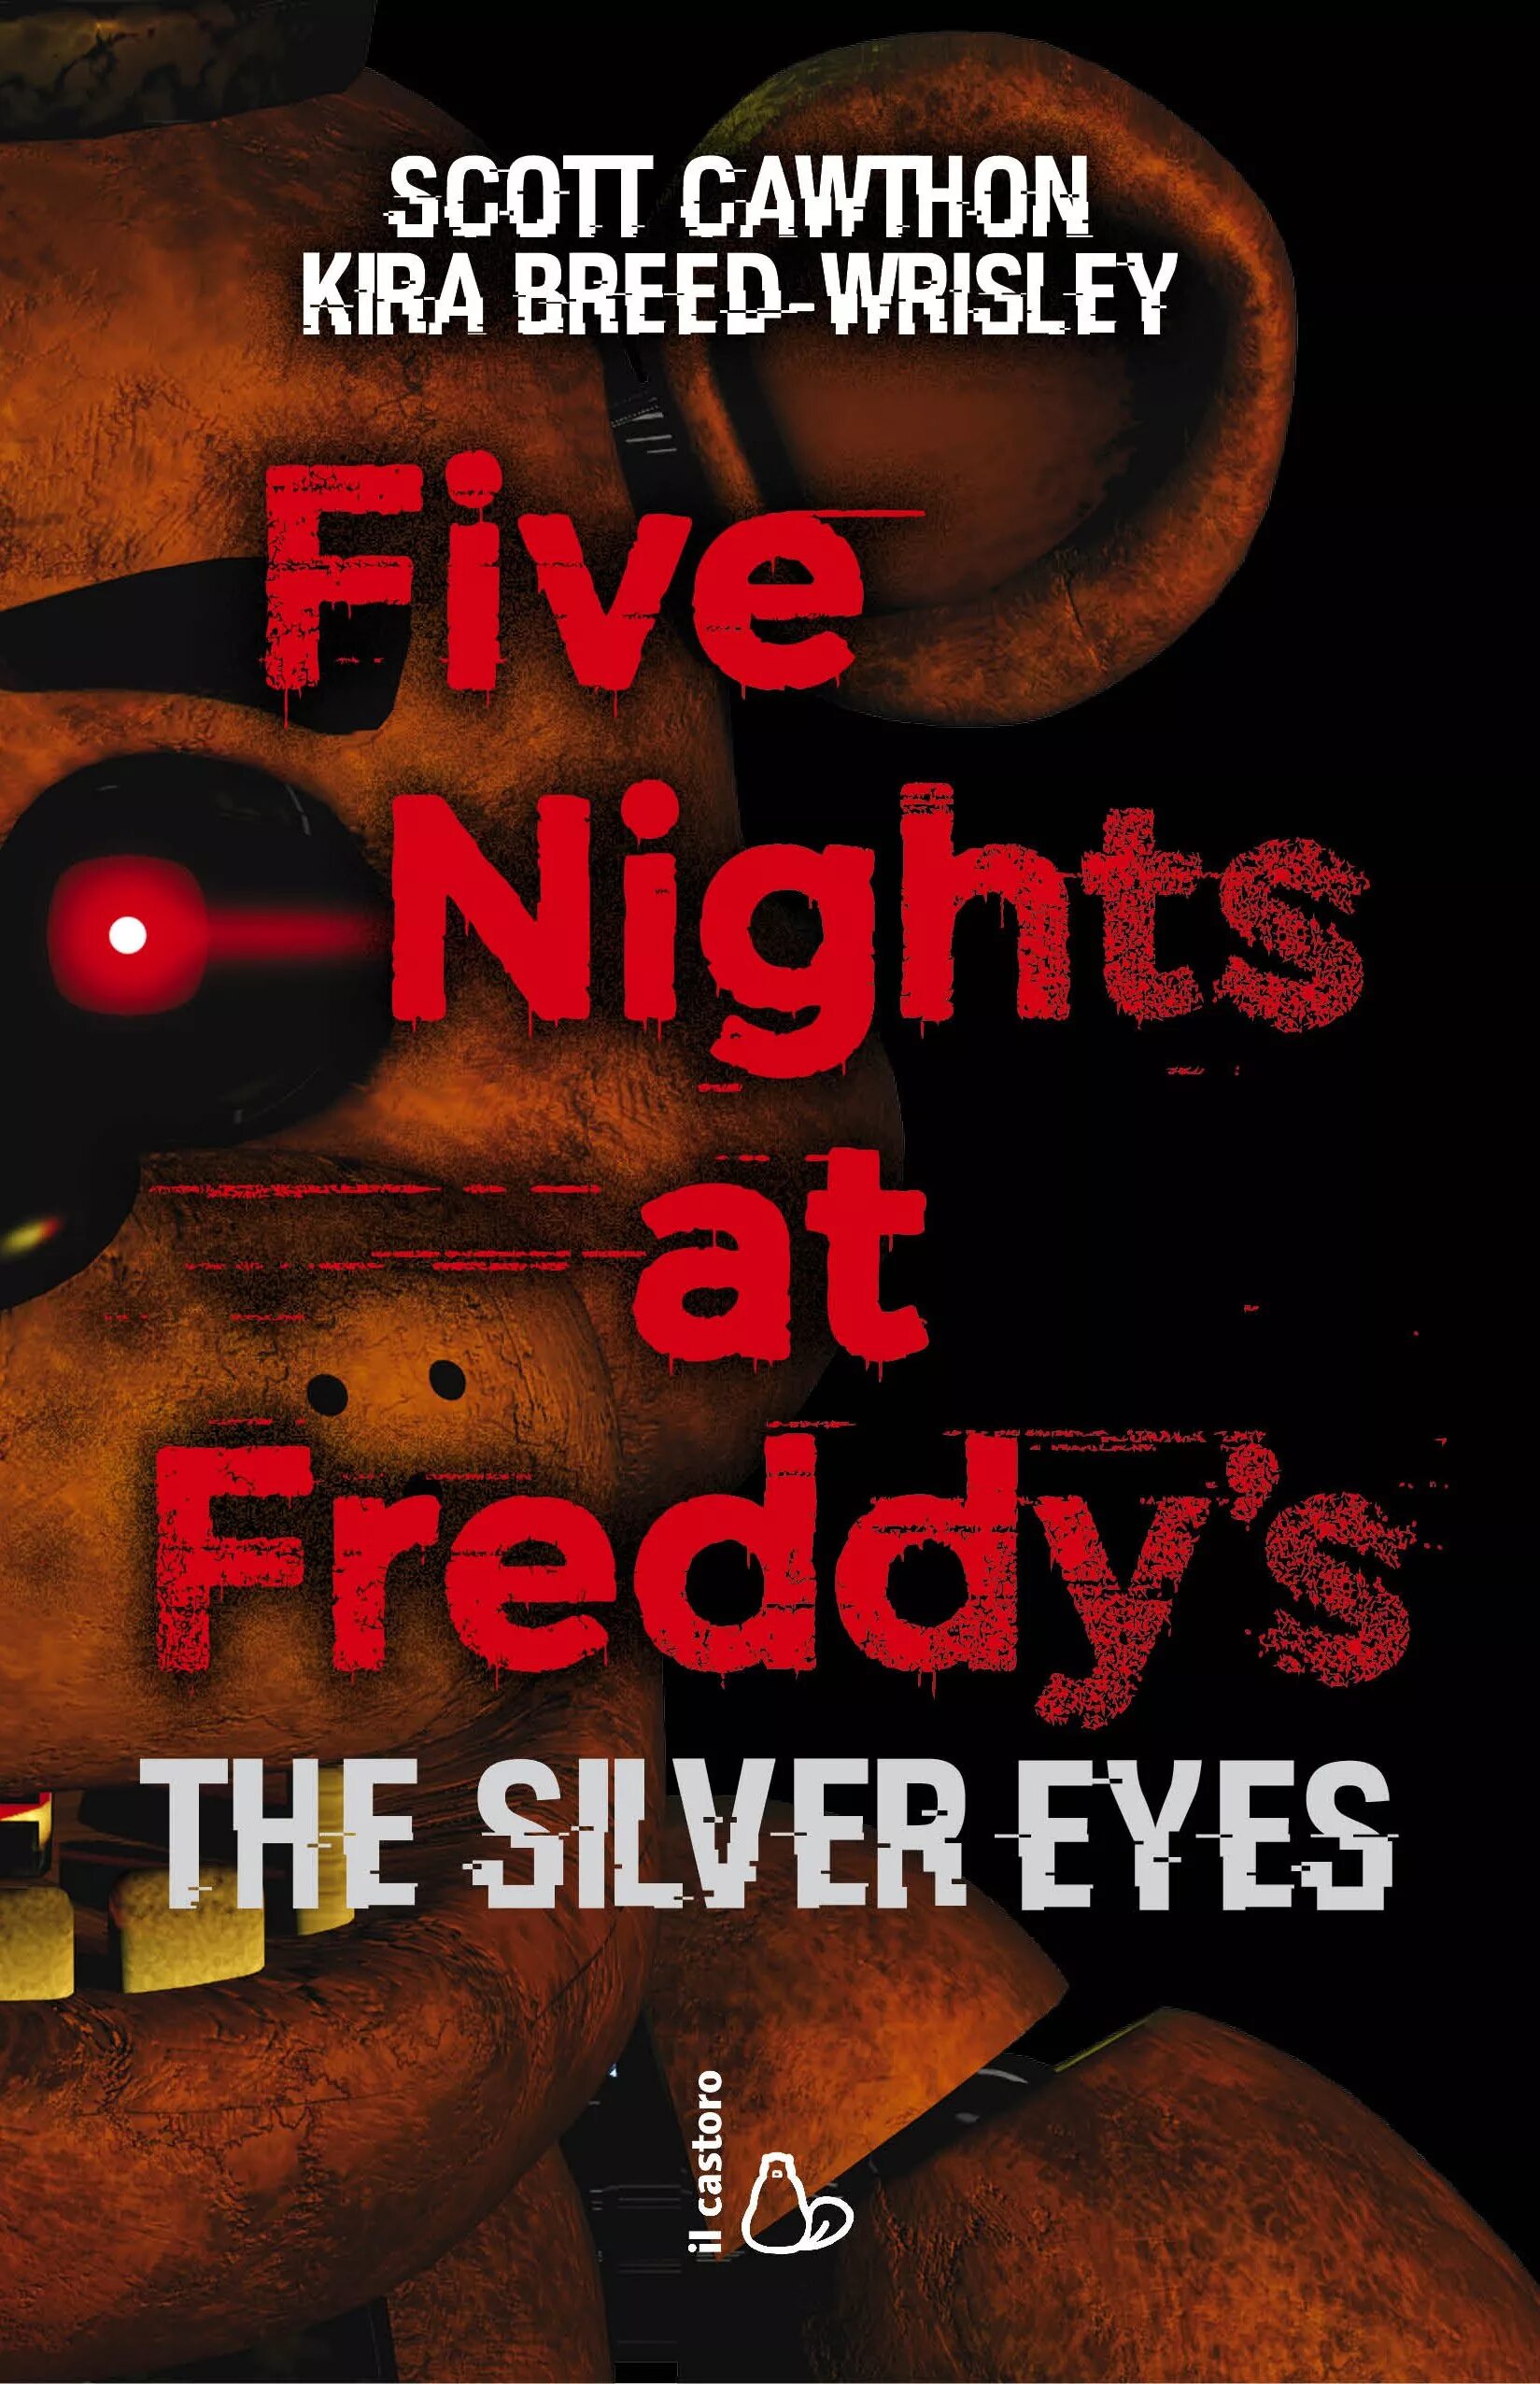 Серебряная книга фнаф. Скотт Коутон серебряные глаза. Five Nights at Freddy s Скотт Коутон. Five Nights at Freddy's Скотт Коутон серебряные глаза. Скотт Коутон файлы Фредди.